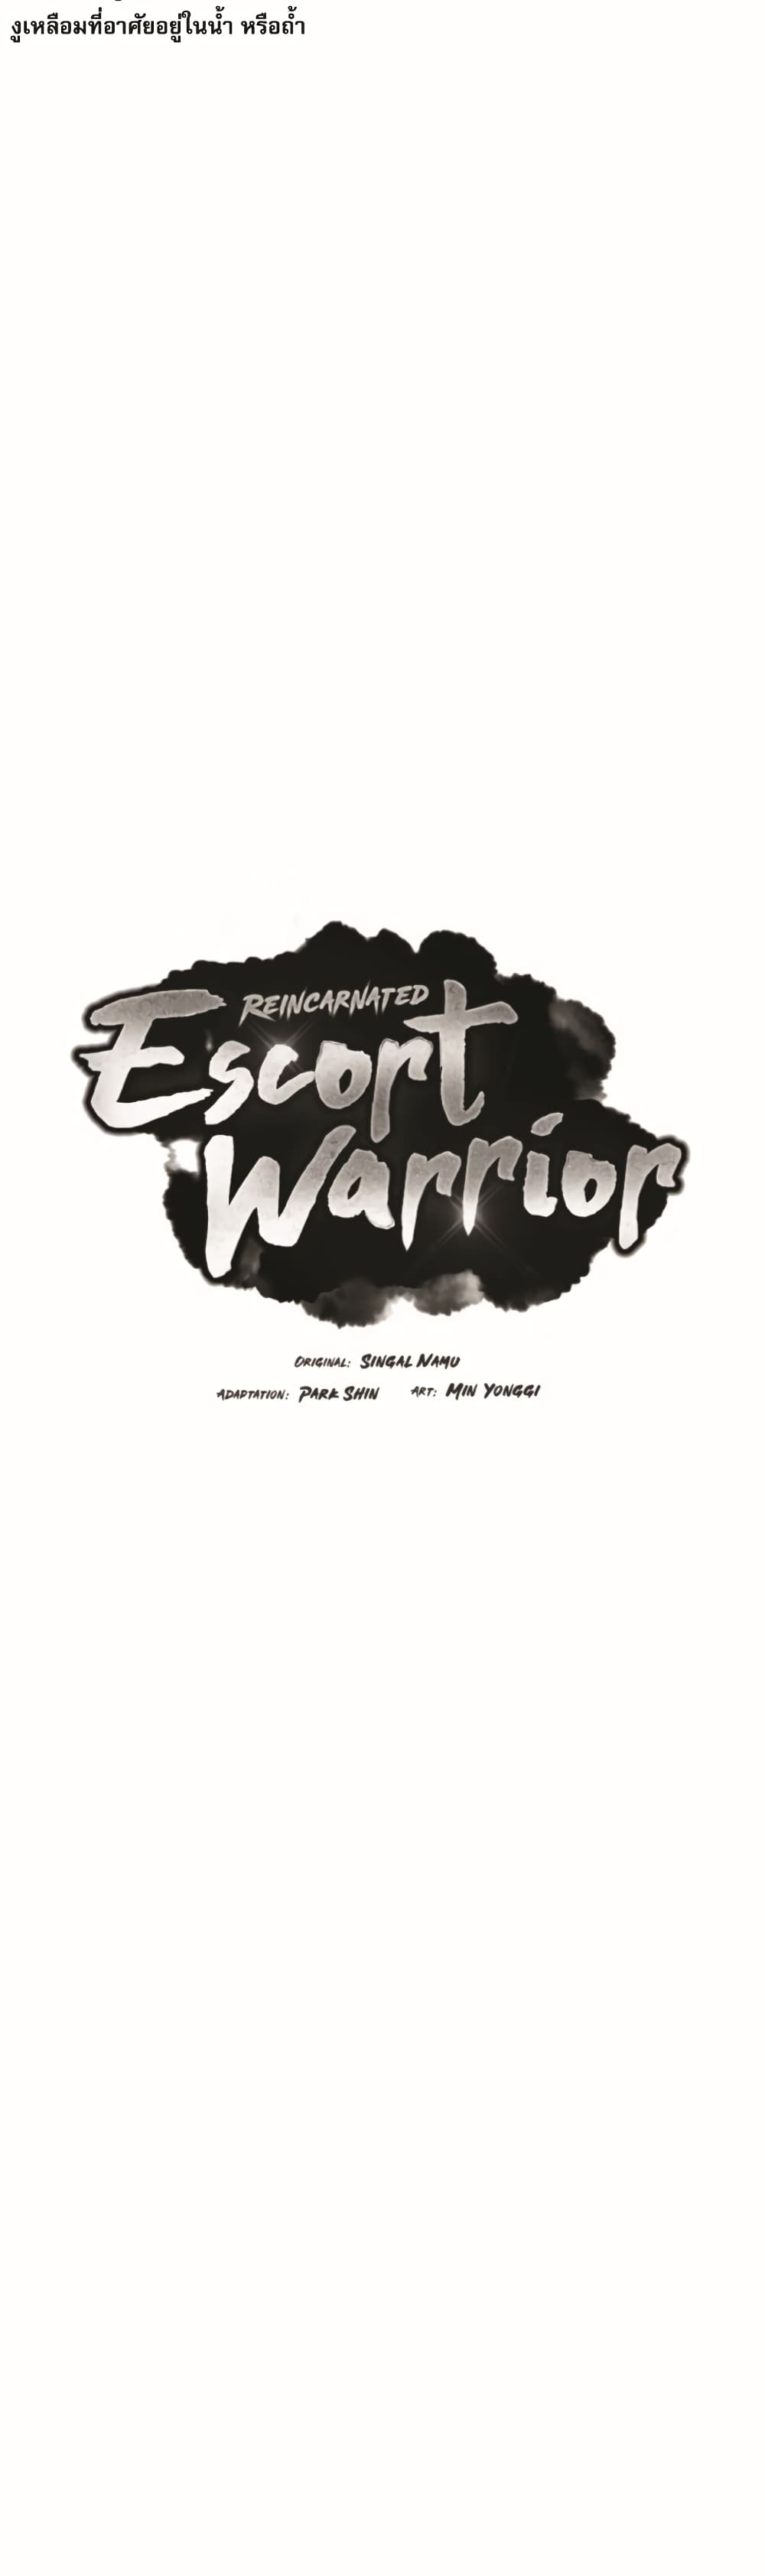 Reincarnated Escort Warrior 22-22